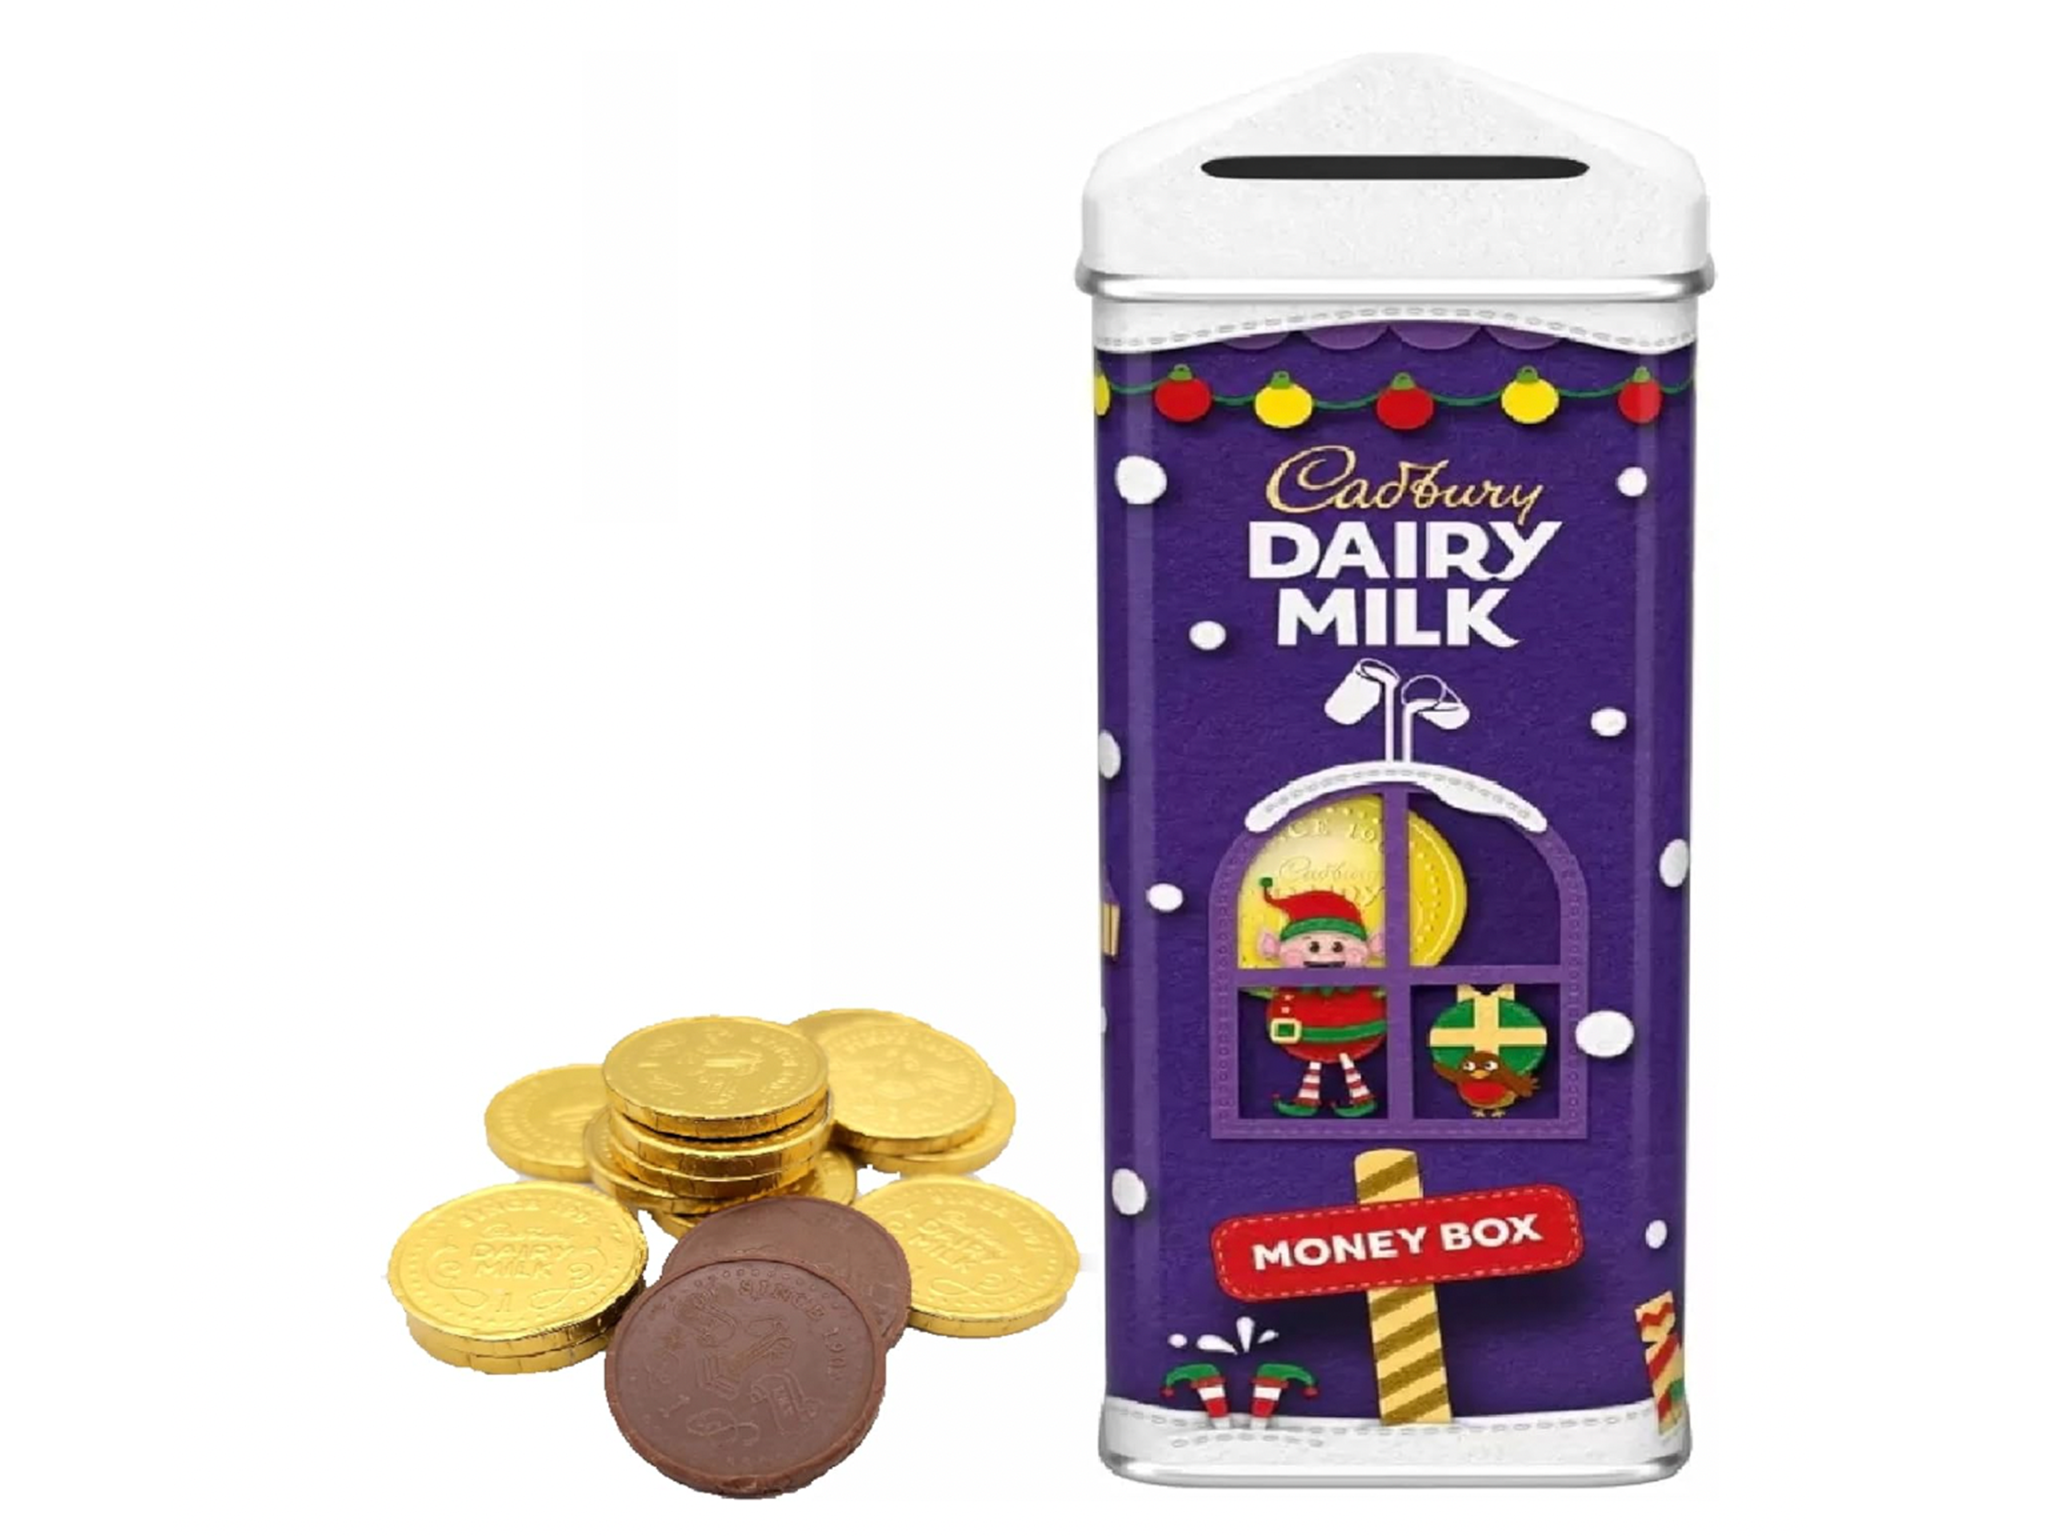 Cadbury Christmas chocolate gift box 230g.png